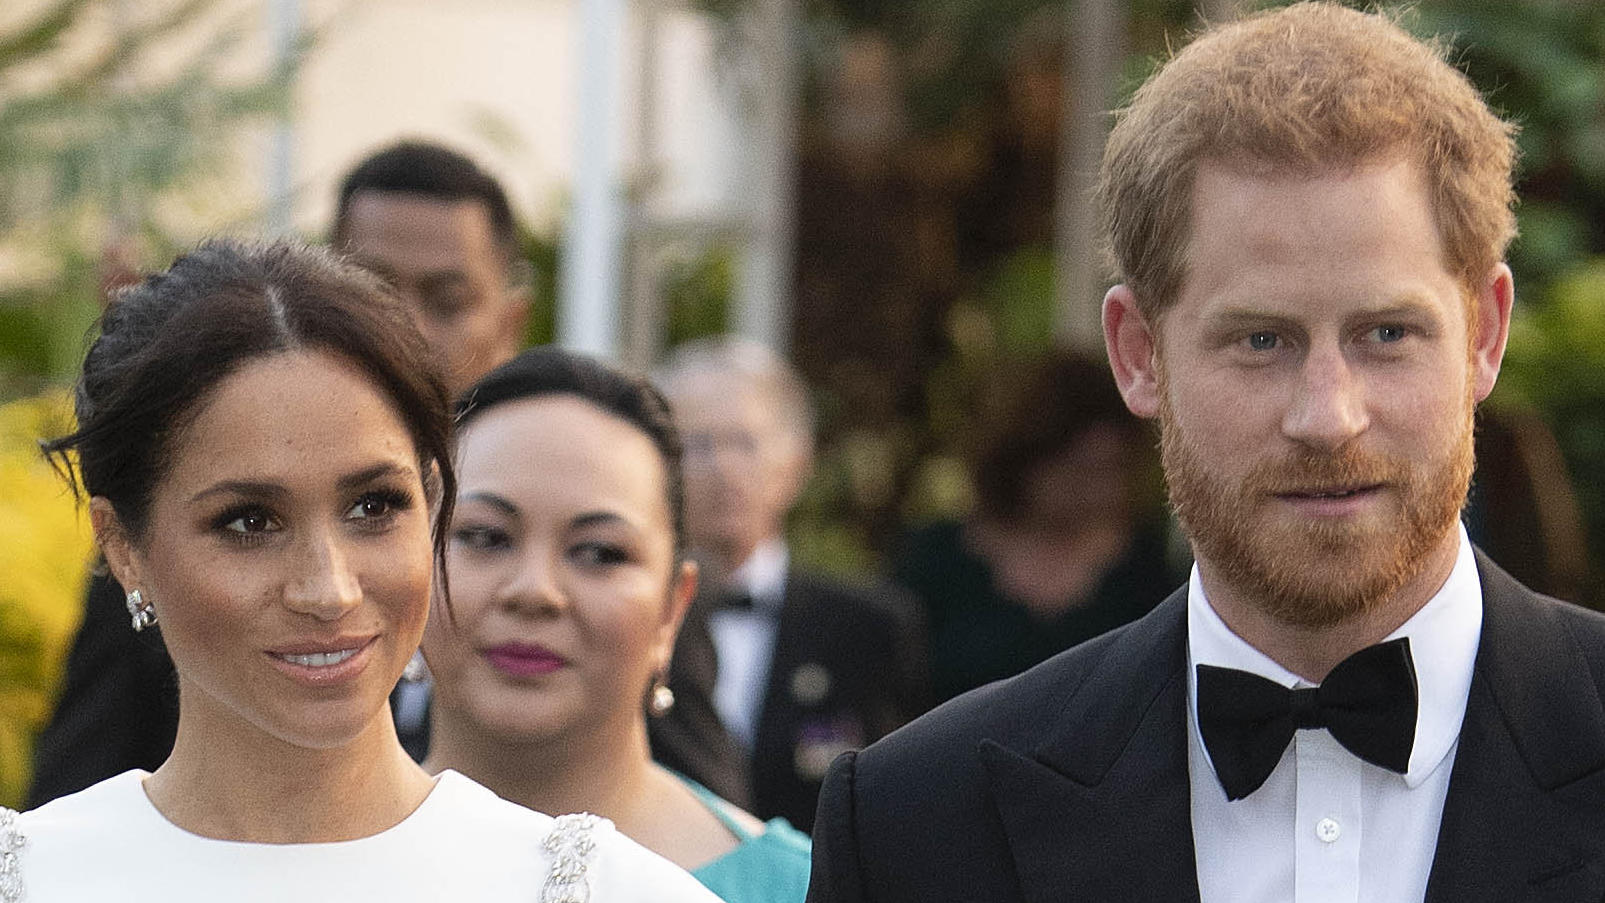 25.10.2018, Tonga, Nuku'alofa: Der britische Prinz Harry und seine Frau Meghan kommen zu einem Staatsdinner. Prinz Harry und seine Frau Meghan sind auf ihrer ersten offiziellen gemeinsamen Auslandsreise seit der Hochzeit im Mai und machen eine 16-Täg